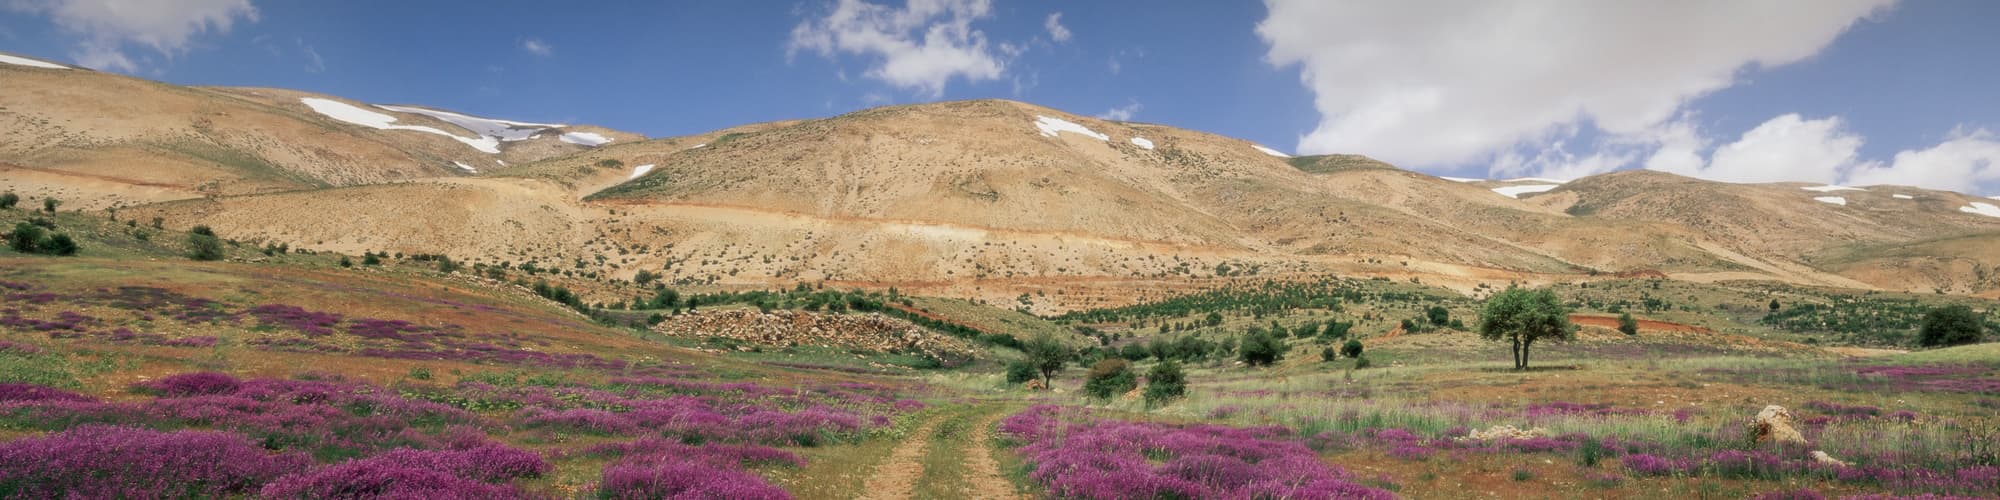 Trek au Liban : circuit, randonnée et voyage © Daniel Thierry/Photononstop